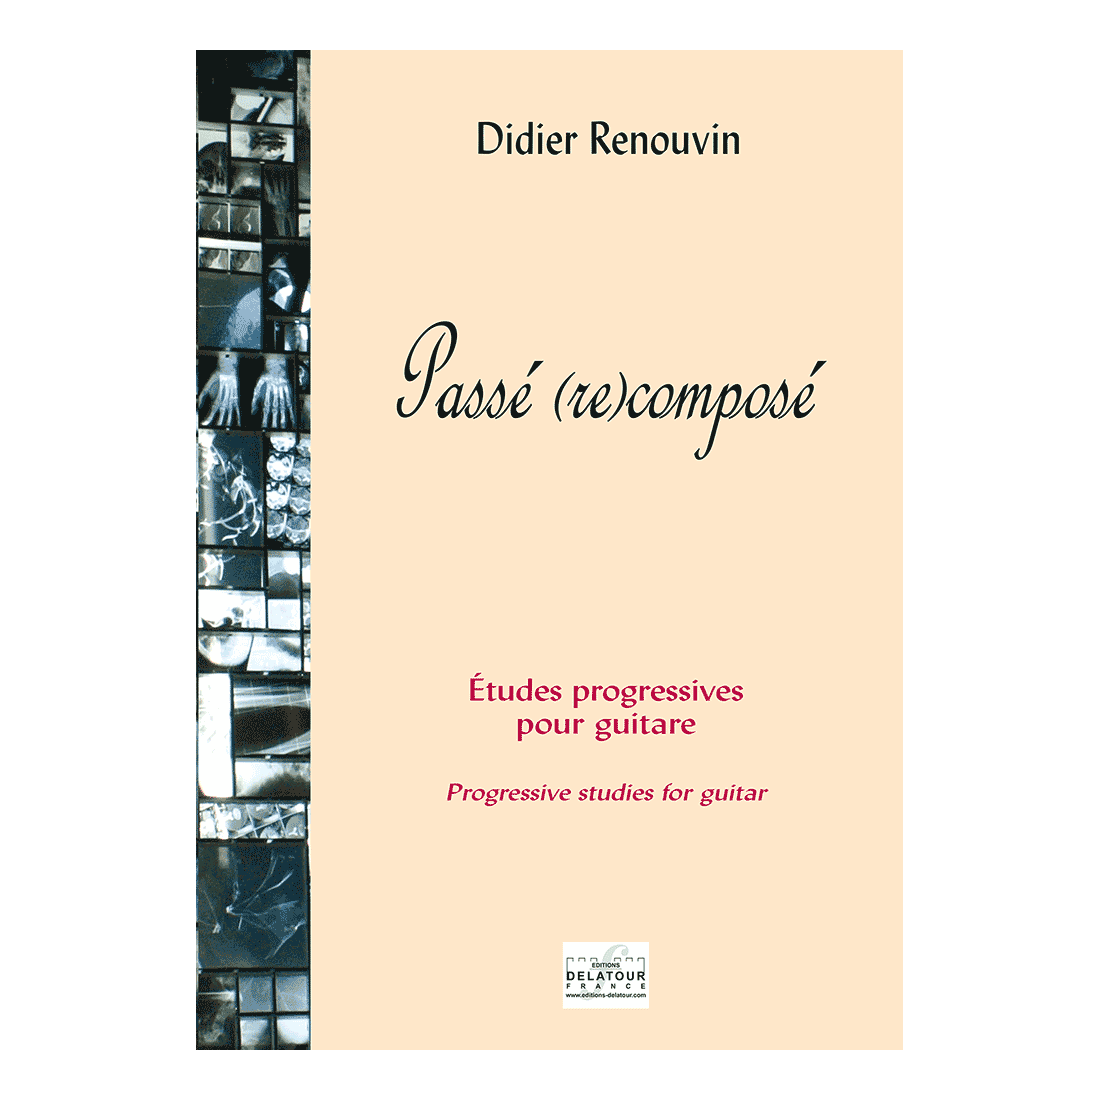 Passé (re)composé - Progressive Studien für Gitarre